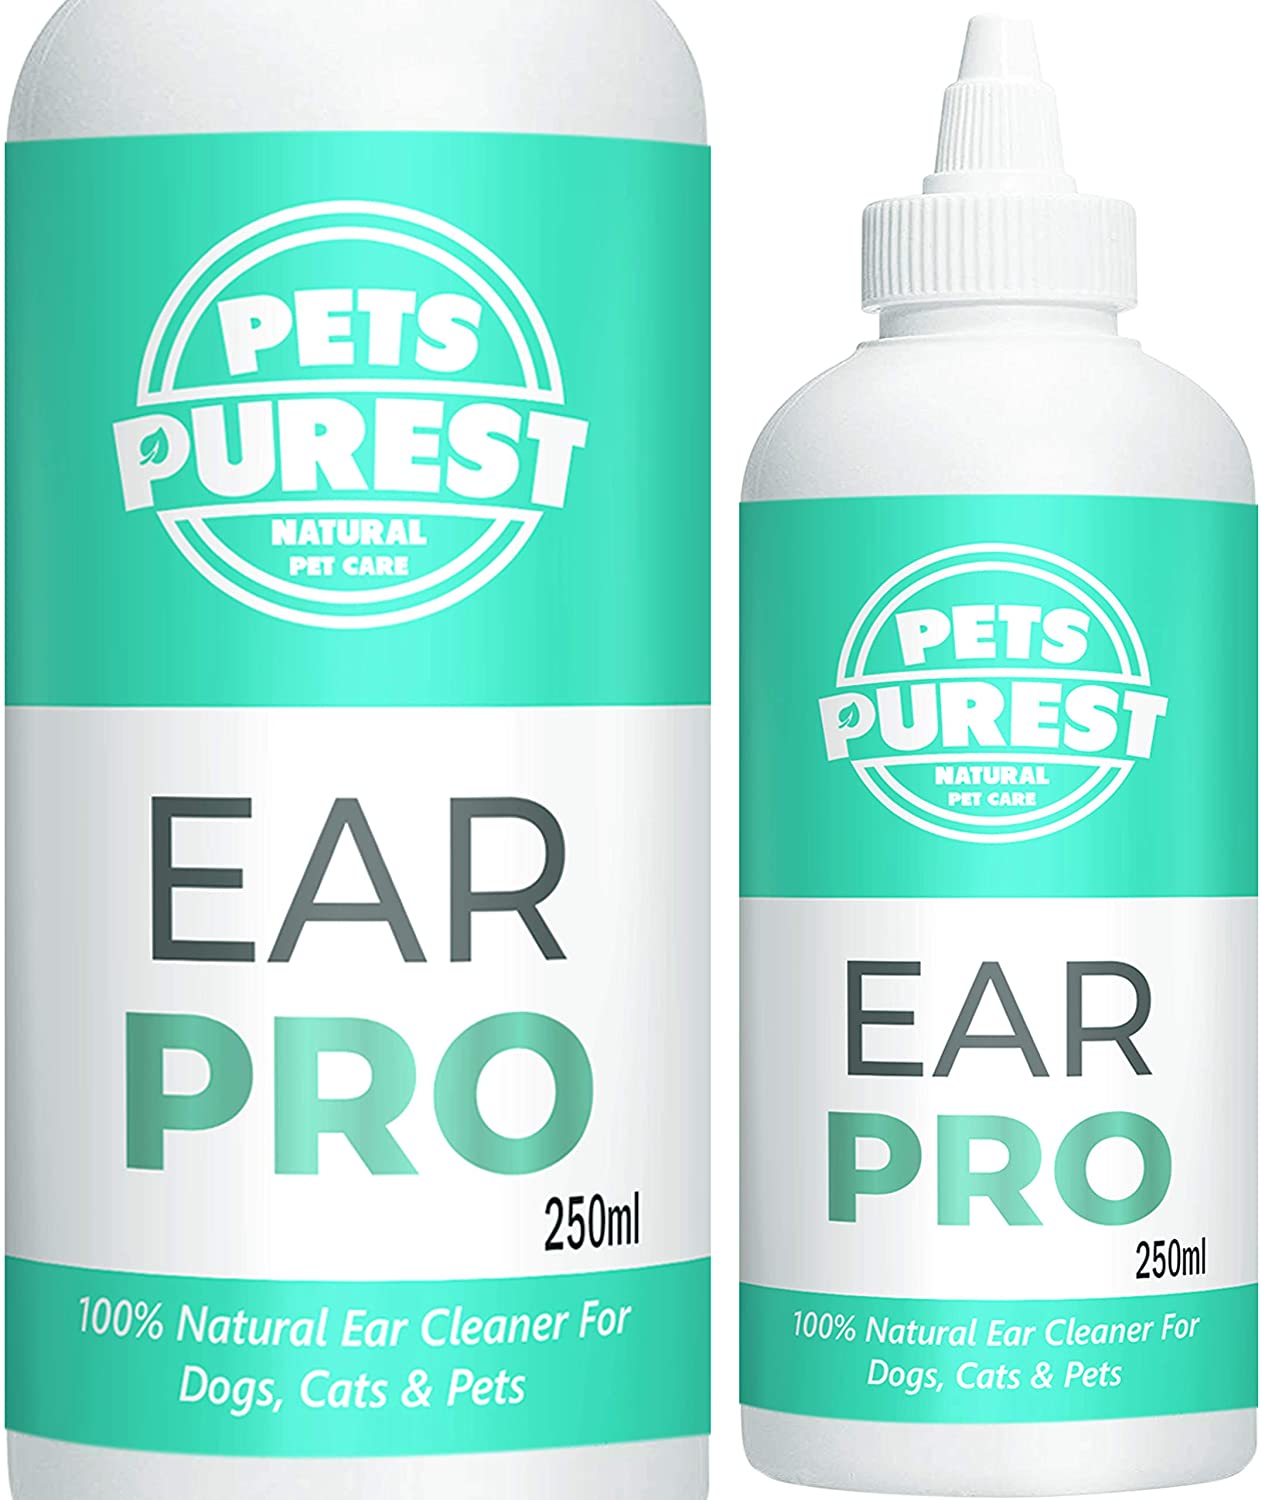  Pets Purest 100% Natural Limpiador de Oidos para Perros (250ml) con fórmula antihongos Repelente de ácaros picazón, Olor a mugre y Oreja desapareció en 2-3 días para Perros, Gatos y Mascotas 